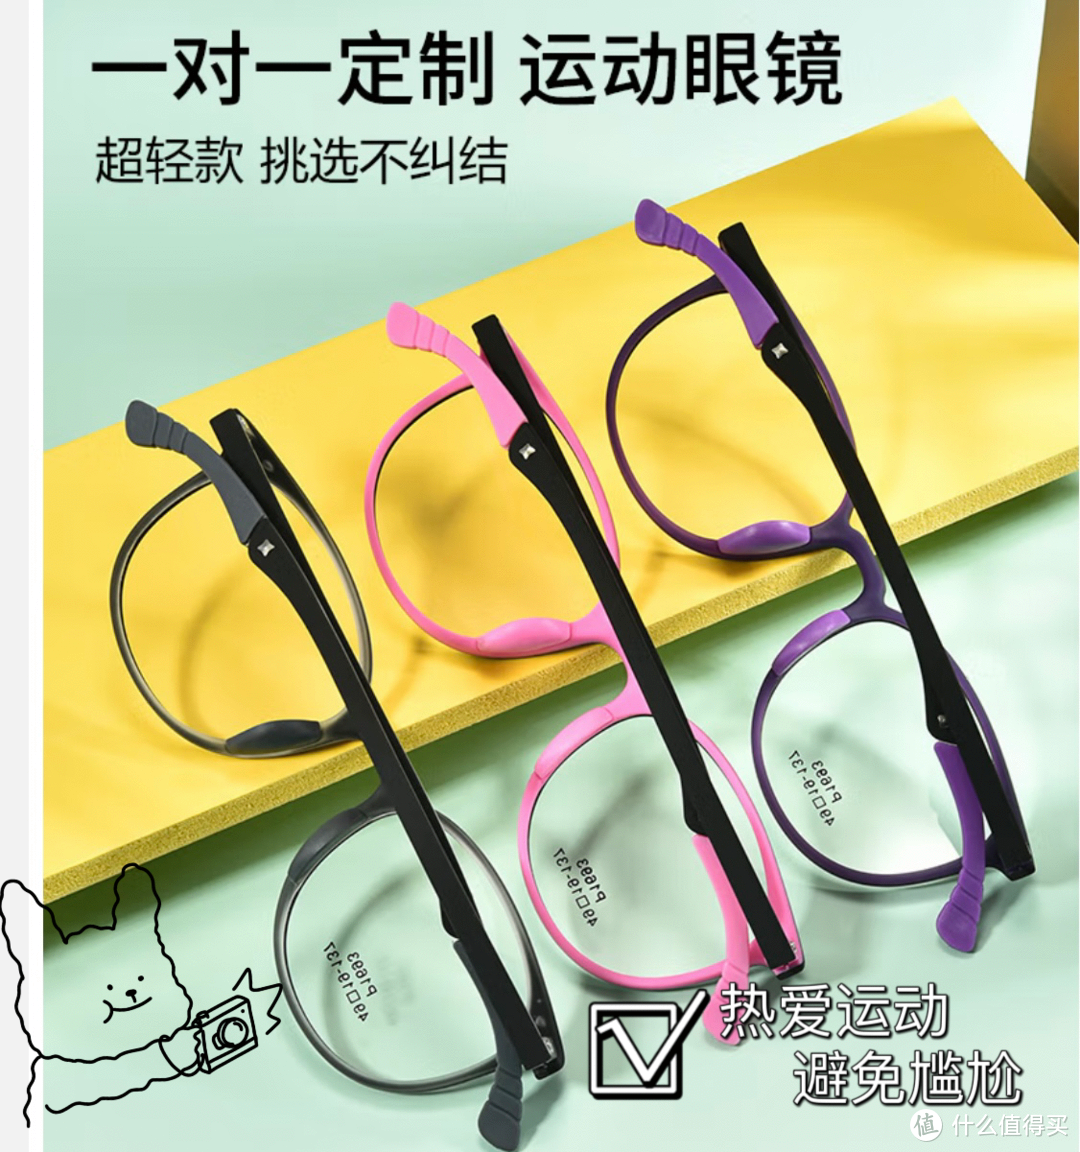 孩子近视防控眼镜选购指南：正确选择是关键！